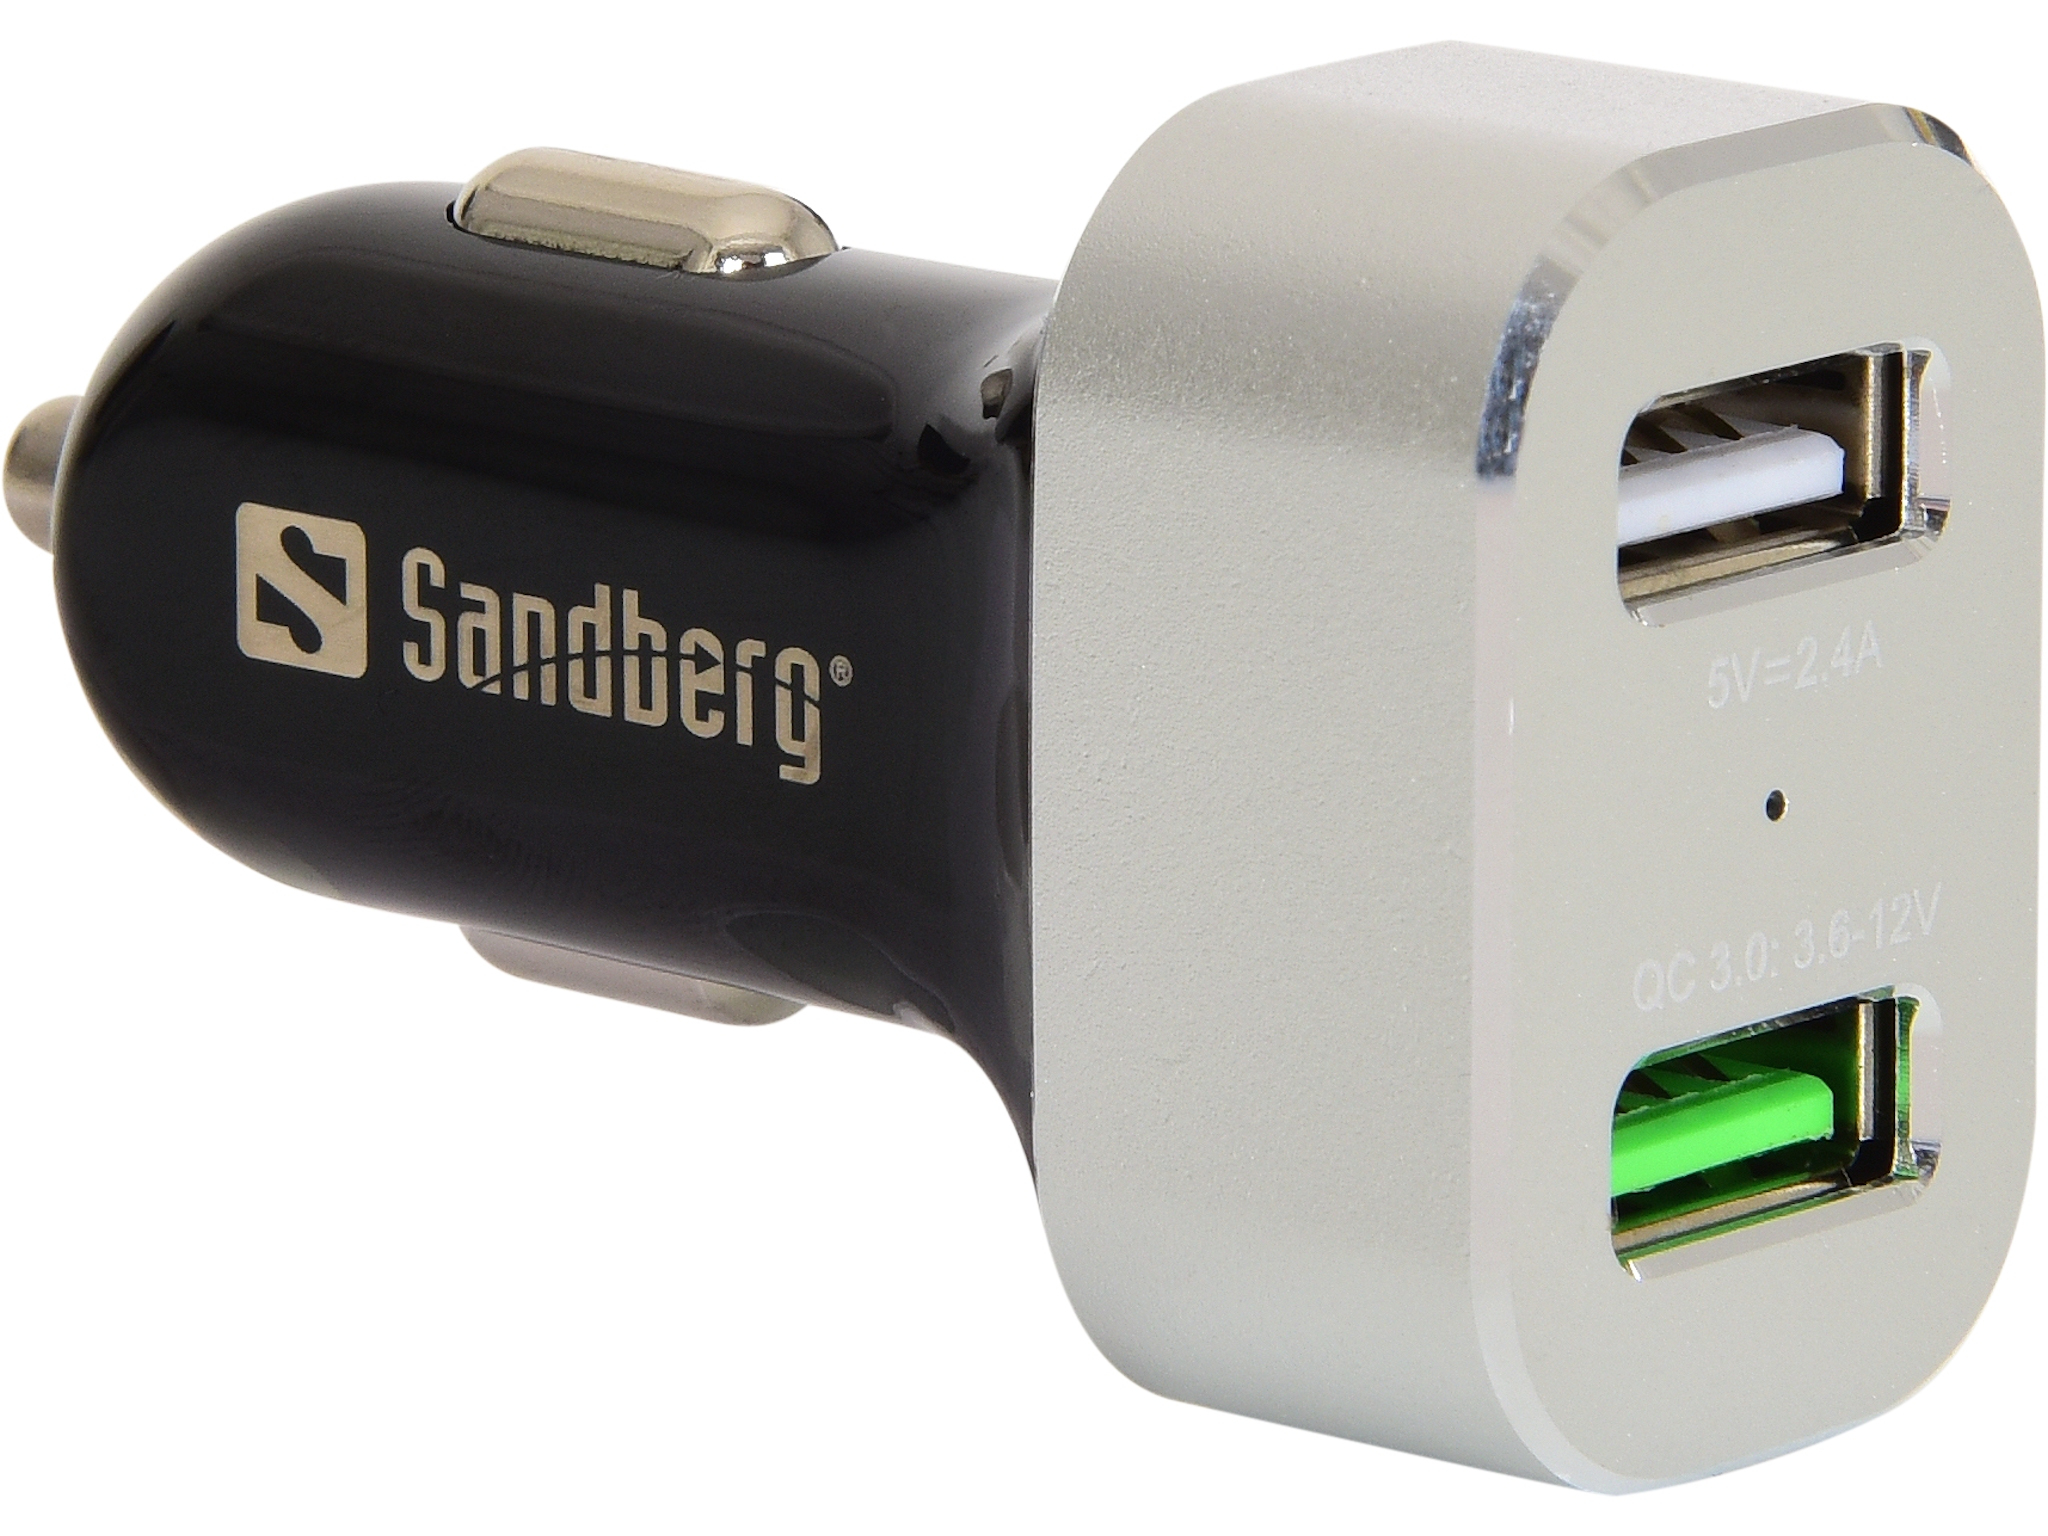 SANDBERG Car Charger 1xQC 3.0+1xUSB2.4A - Auto-Netzteil - 3 A - QC 3.0 - 2 Ausgabeanschlussstellen (USB)